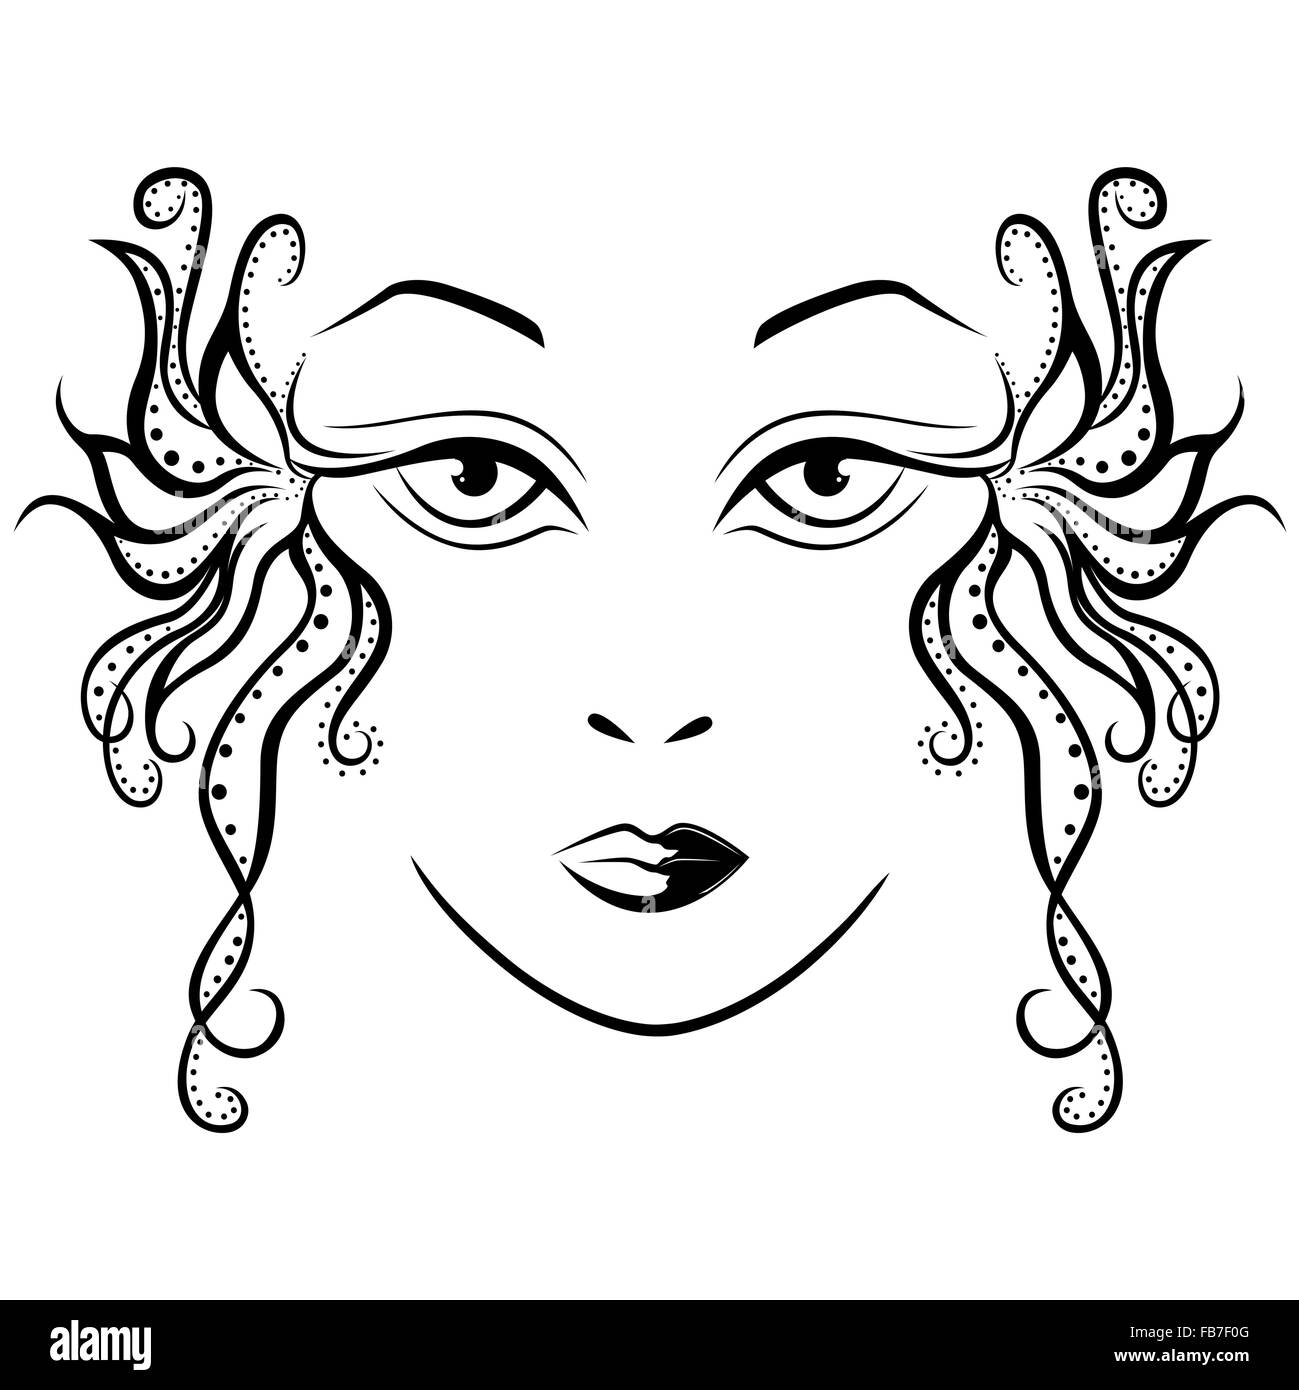 Abstraite noir et blanc visage de femme avec des serrures stylisé, dessin à la main vector illustration Illustration de Vecteur